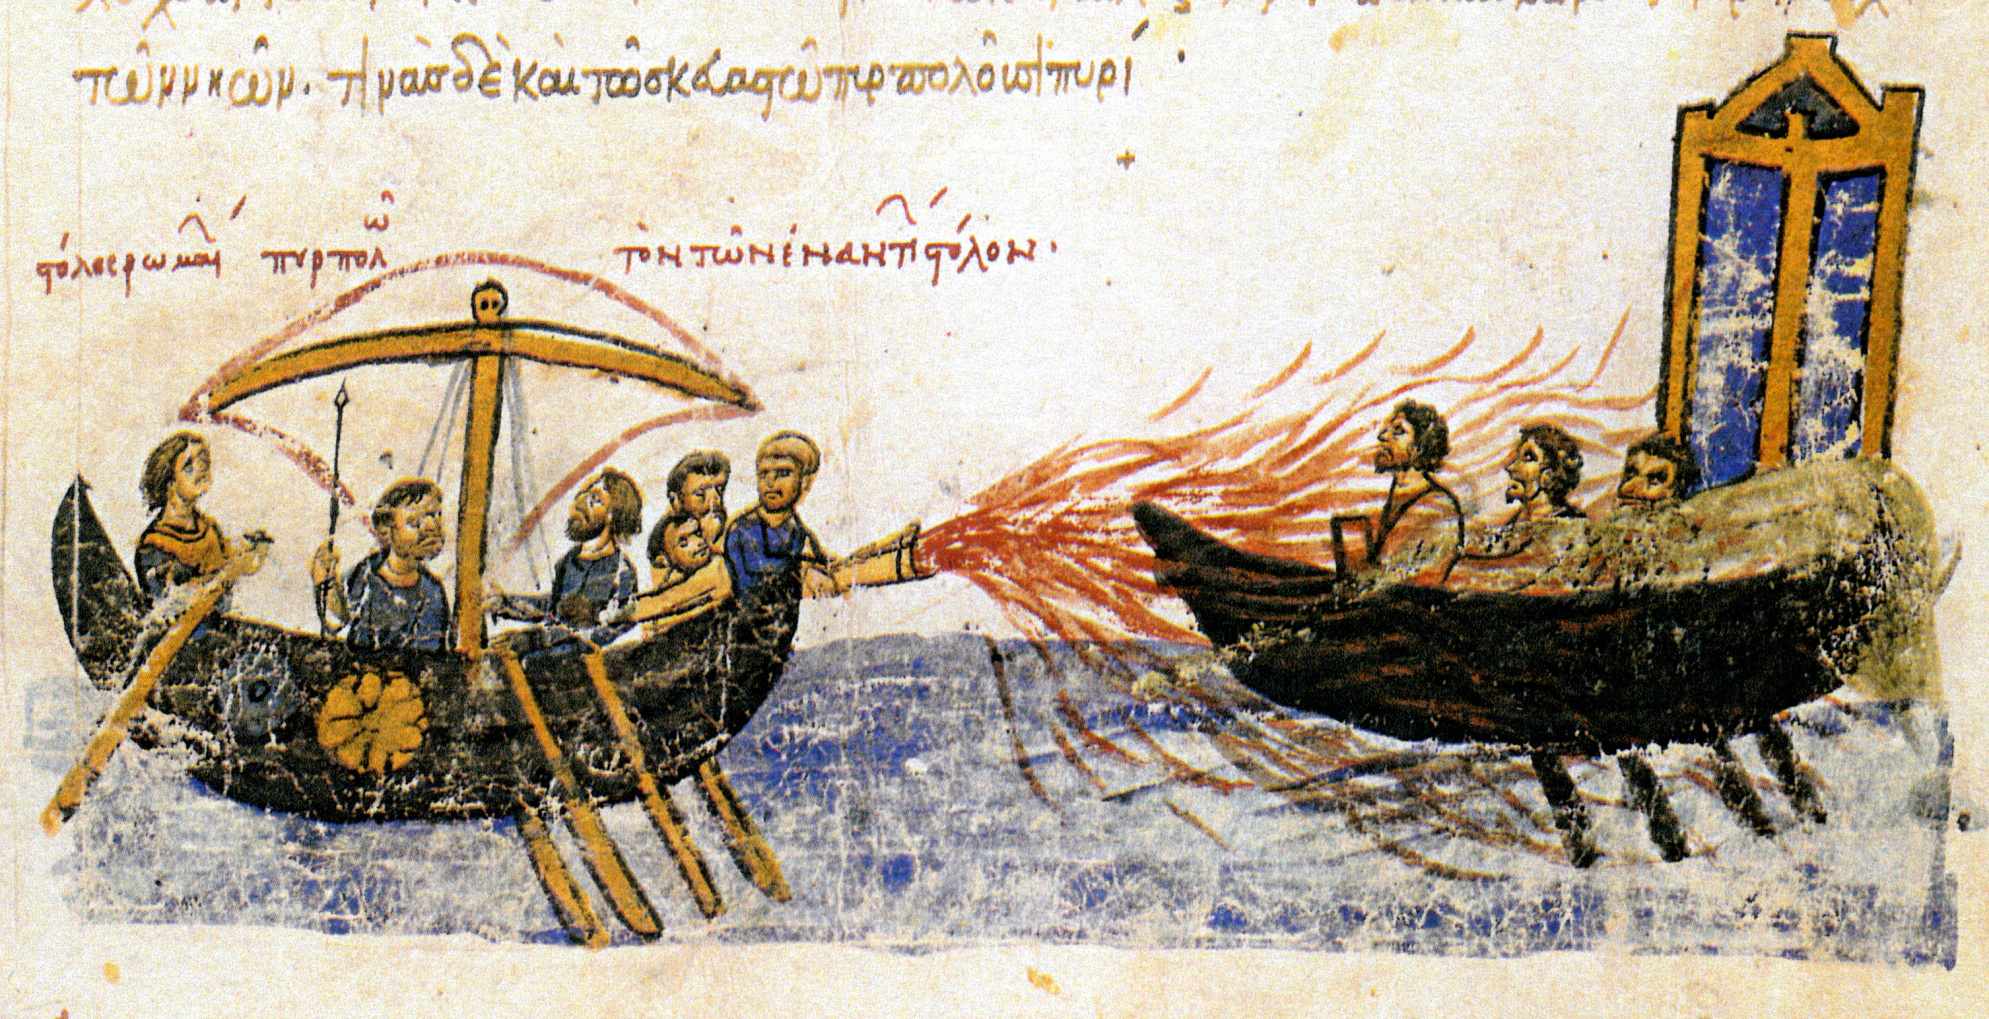 "로마 함대가 반대 함대를 불태우다" – 반군 토마스 슬라브(Thomas Slav)에 속한 배에 대해 그리스 불을 사용하는 비잔틴 배, 821. 마드리드 스카이리츠(Madrid Skylitzes)의 12세기 삽화.